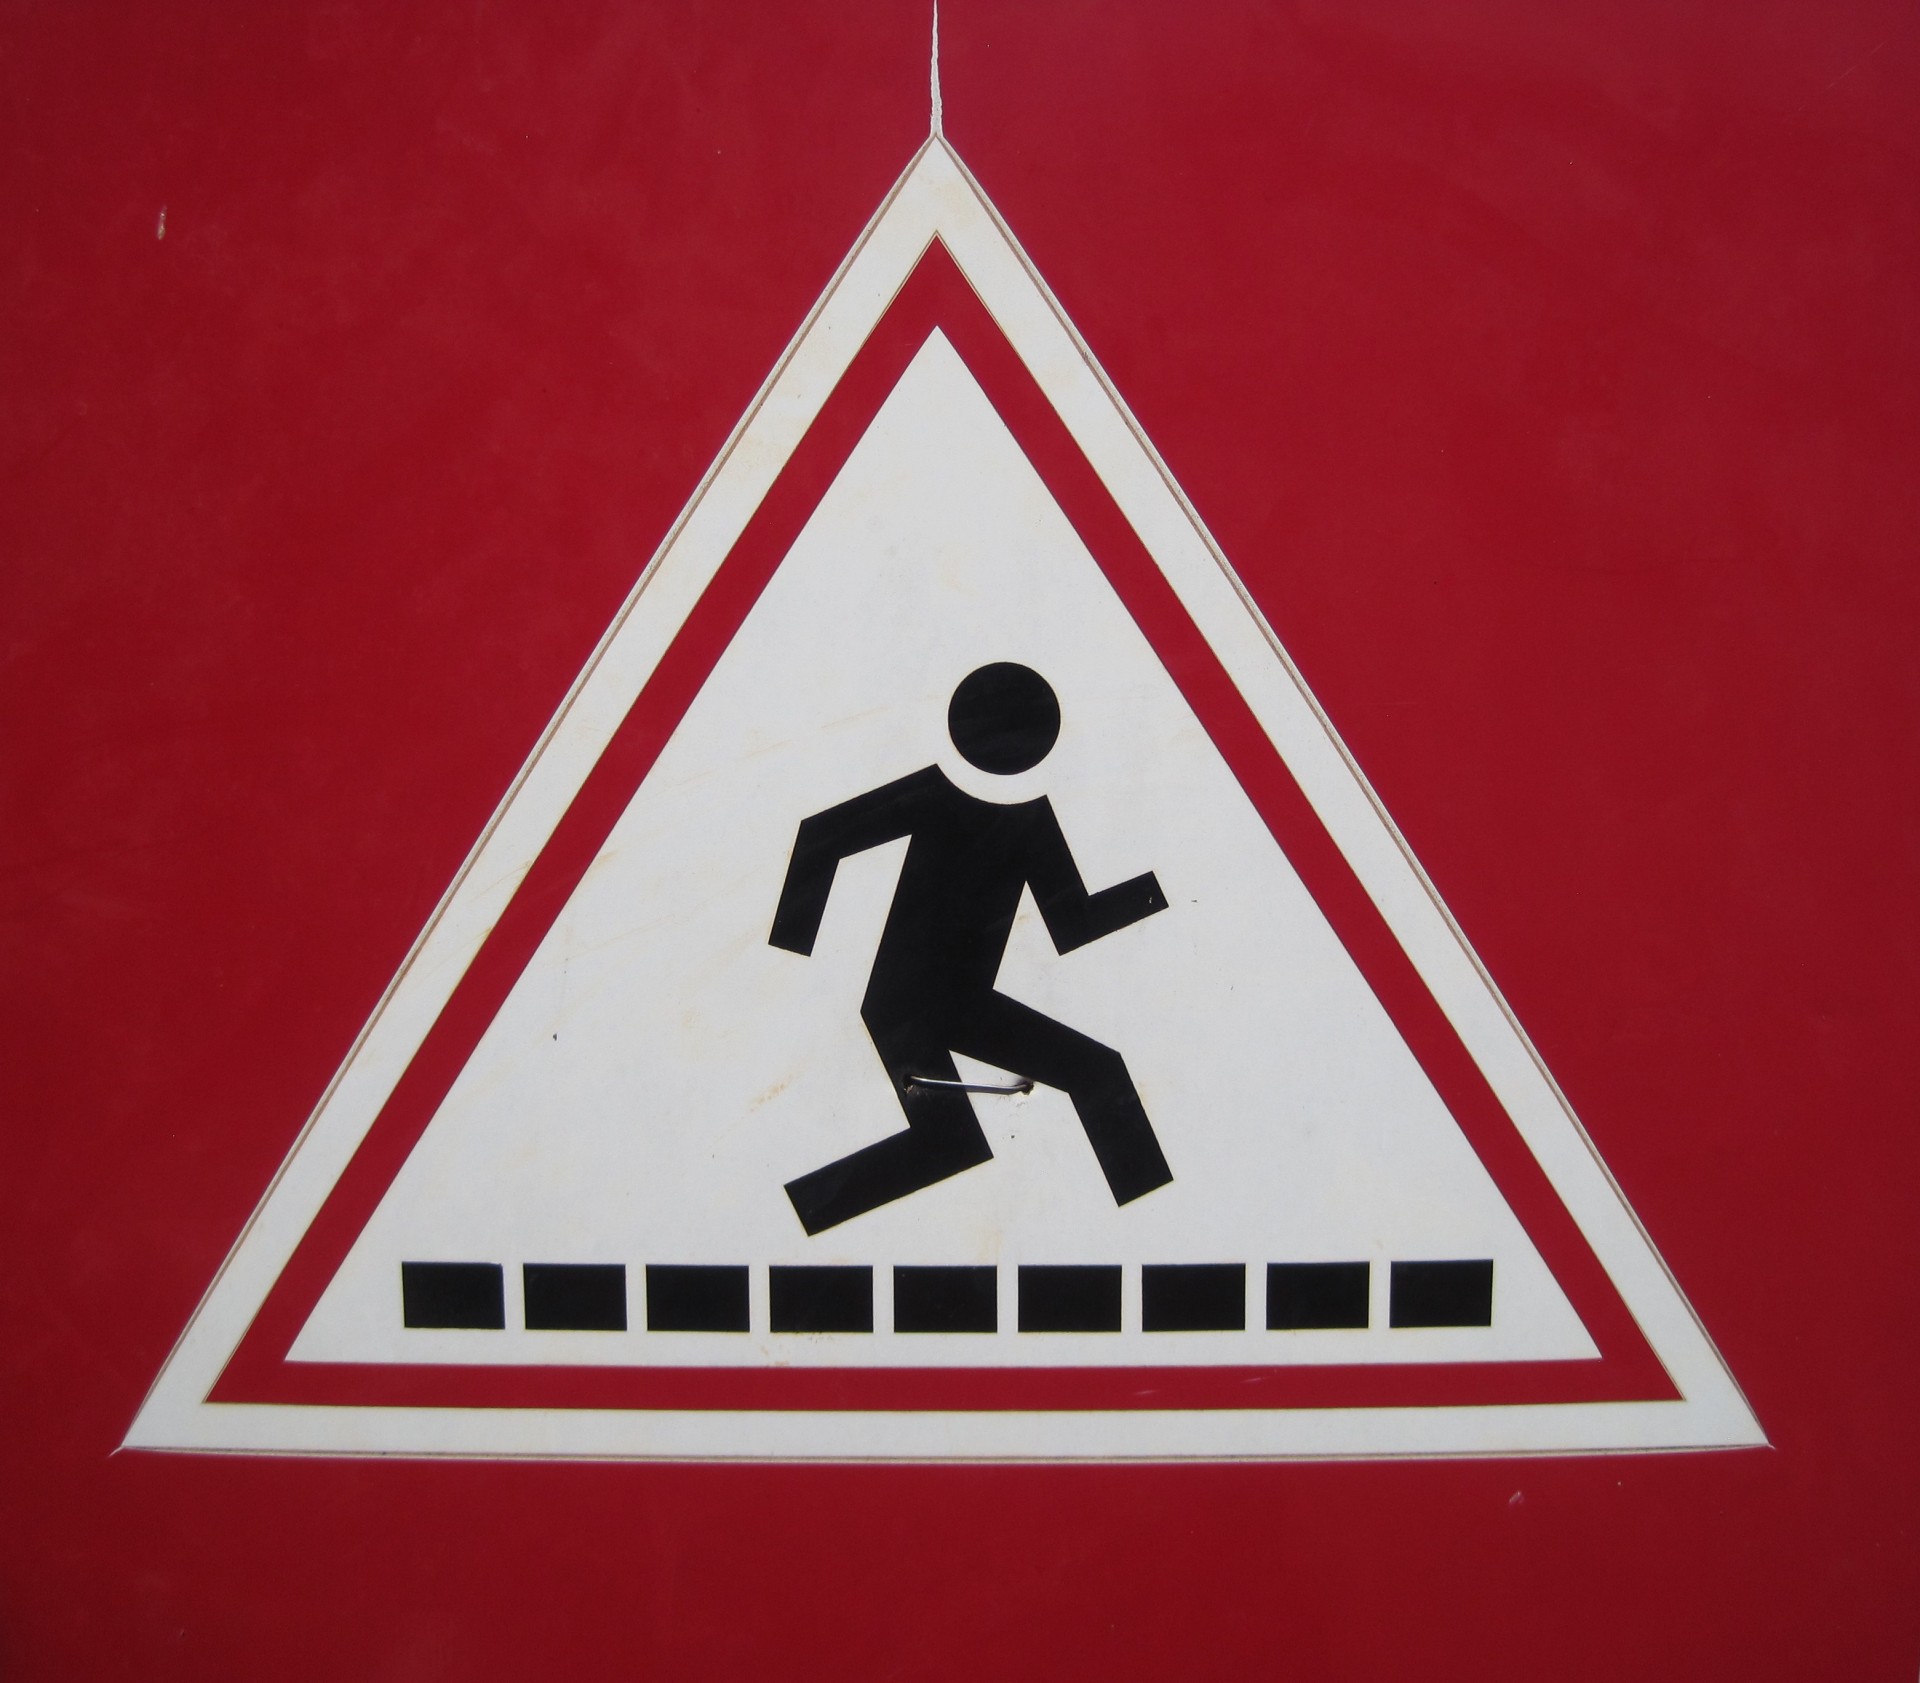 Знак пешехода в треугольнике